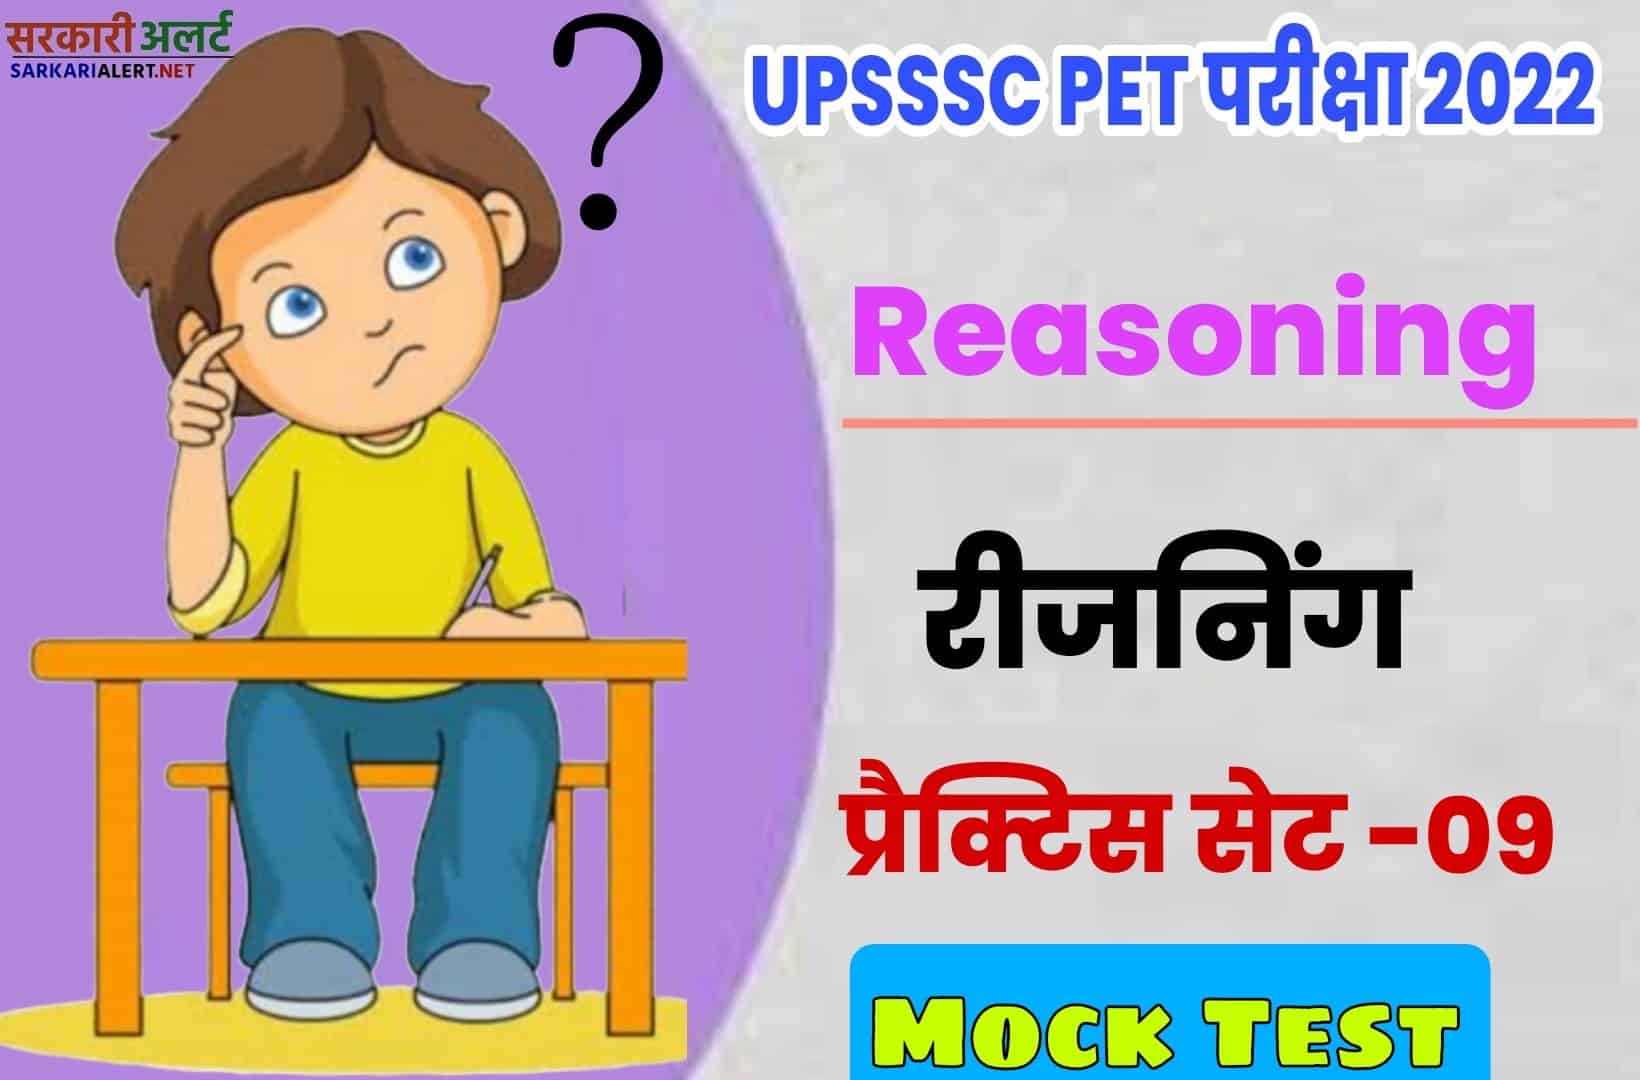 UPSSSC PET Reasoning Practice Set 09 | परीक्षा से पहले एक नजर जरूर पढ़ें मुख्य प्रश्नों संग्रह